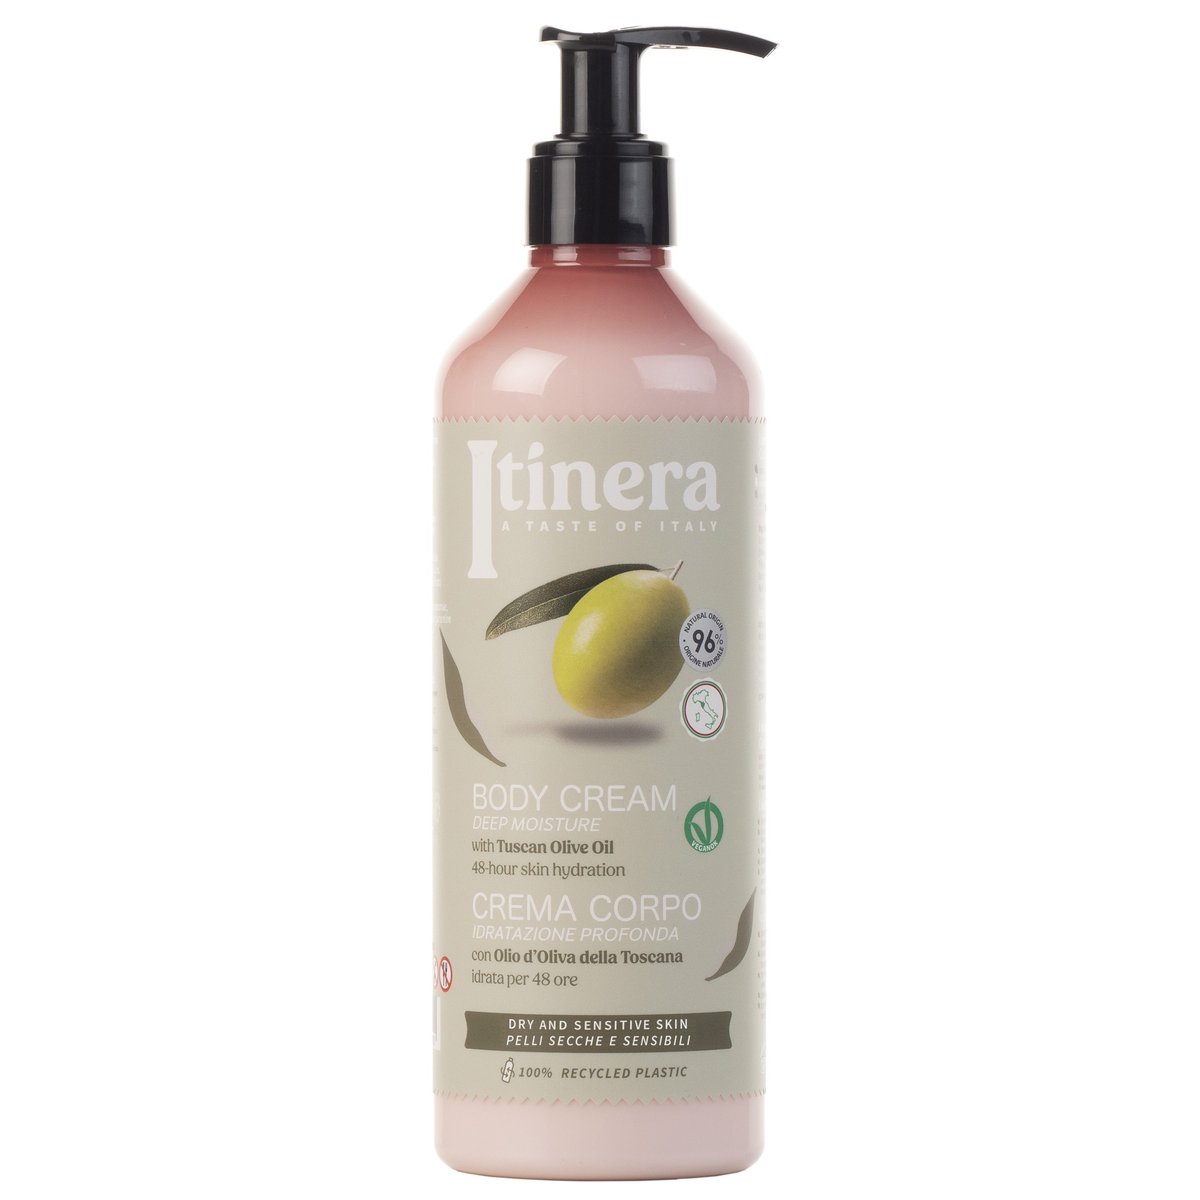 Itinera, Nawilżający balsam do ciała dla skóry suchej i wrażliwej z toskańską oliwą z oliwek, 96% naturalnych składników, 4x370 ml